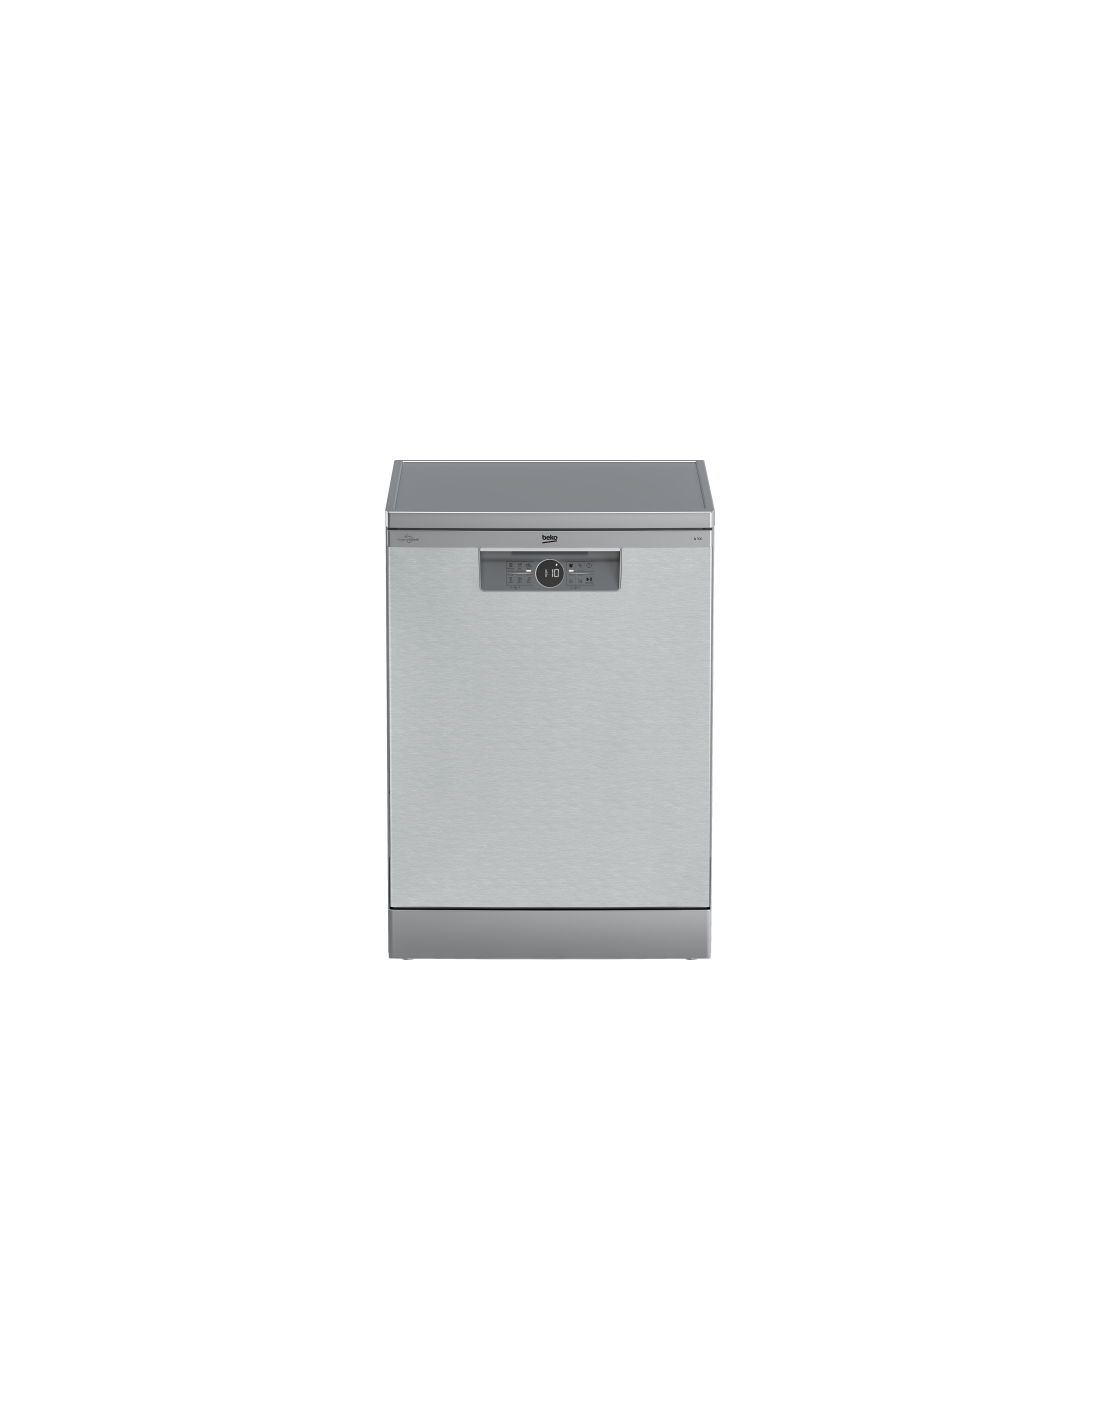 BEKO - Réfrigérateur 1 porte 54cm 221l a+ statique silver avec freezer -  SSA25421S - Vente petit électroménager et gros électroménager